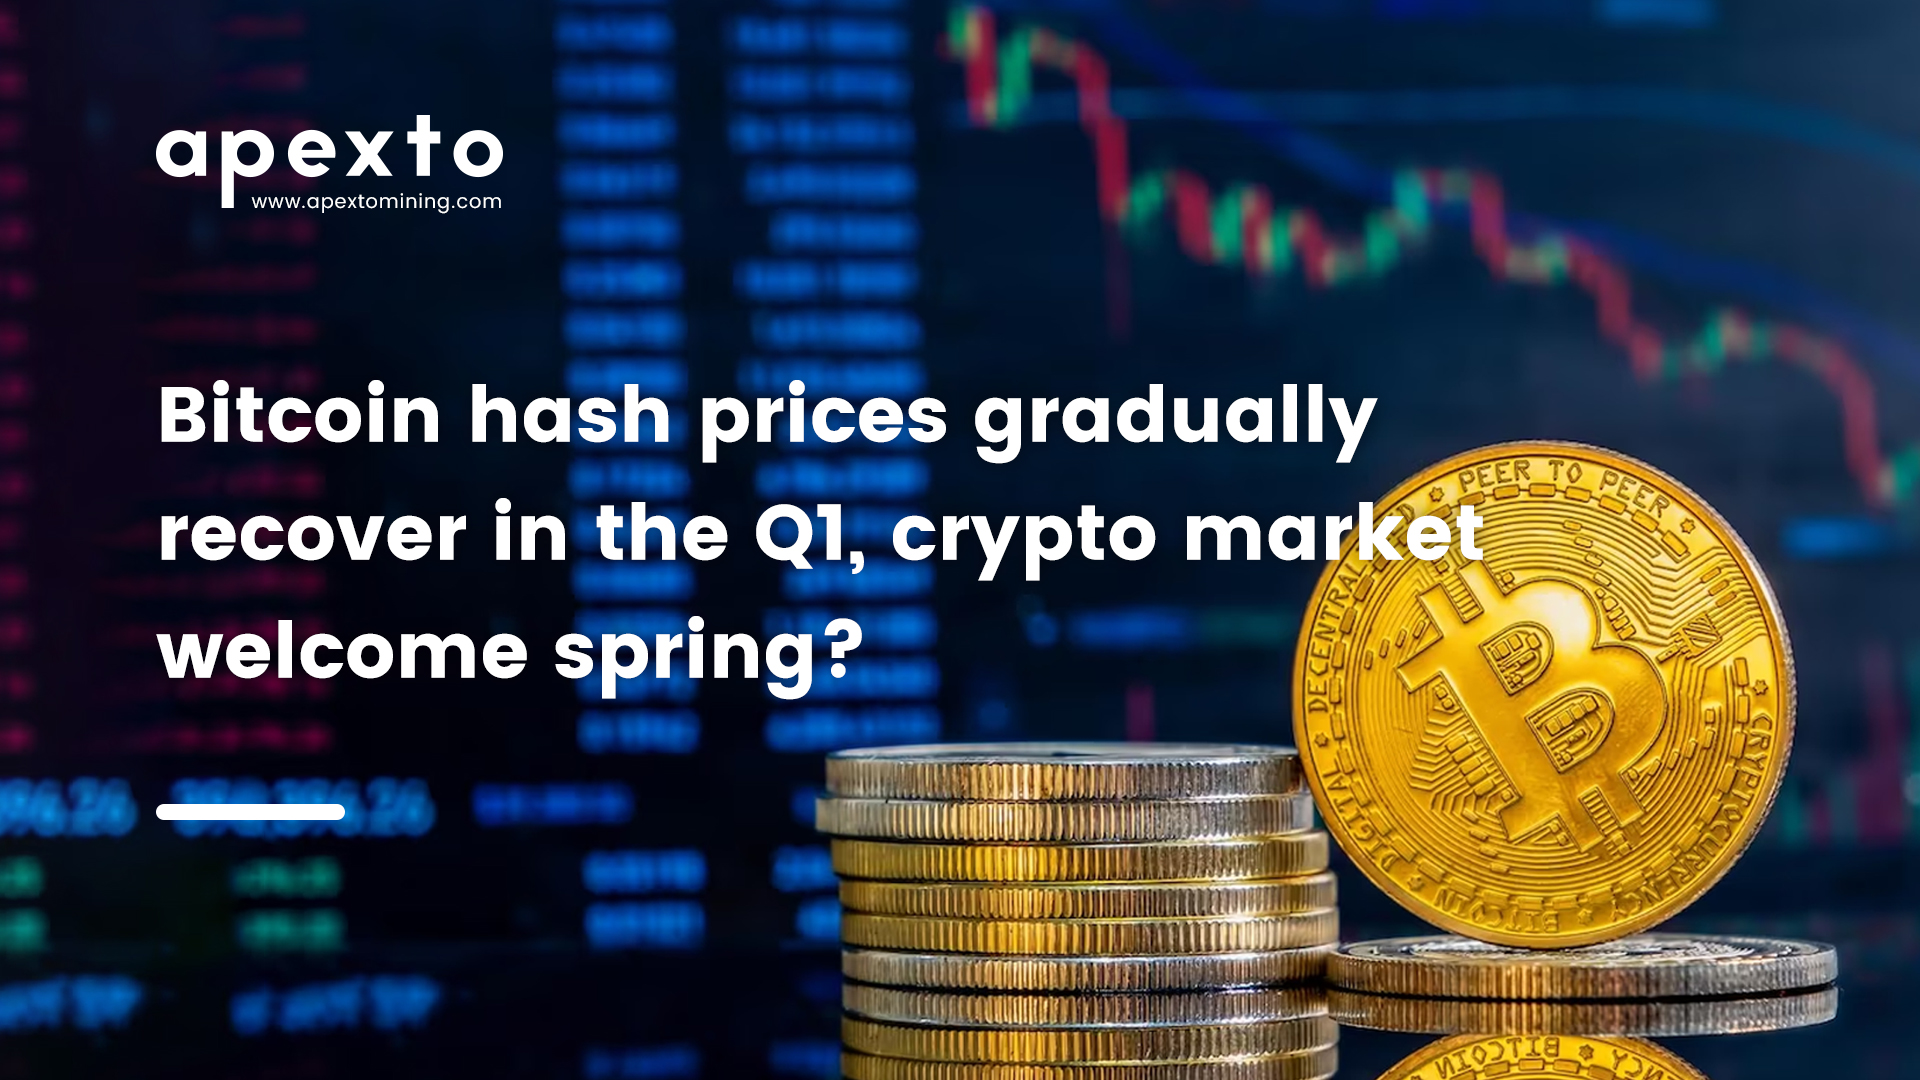 စျေးကွက်သုတေသန ： Q1 တွင် Bitcoin hash စျေးနှုန်းများ တဖြည်းဖြည်း ပြန်လည်ကောင်းမွန်လာပြီး crypto စျေးကွက်သည် နွေဦးရာသီကို ကြိုဆိုပါသည်။